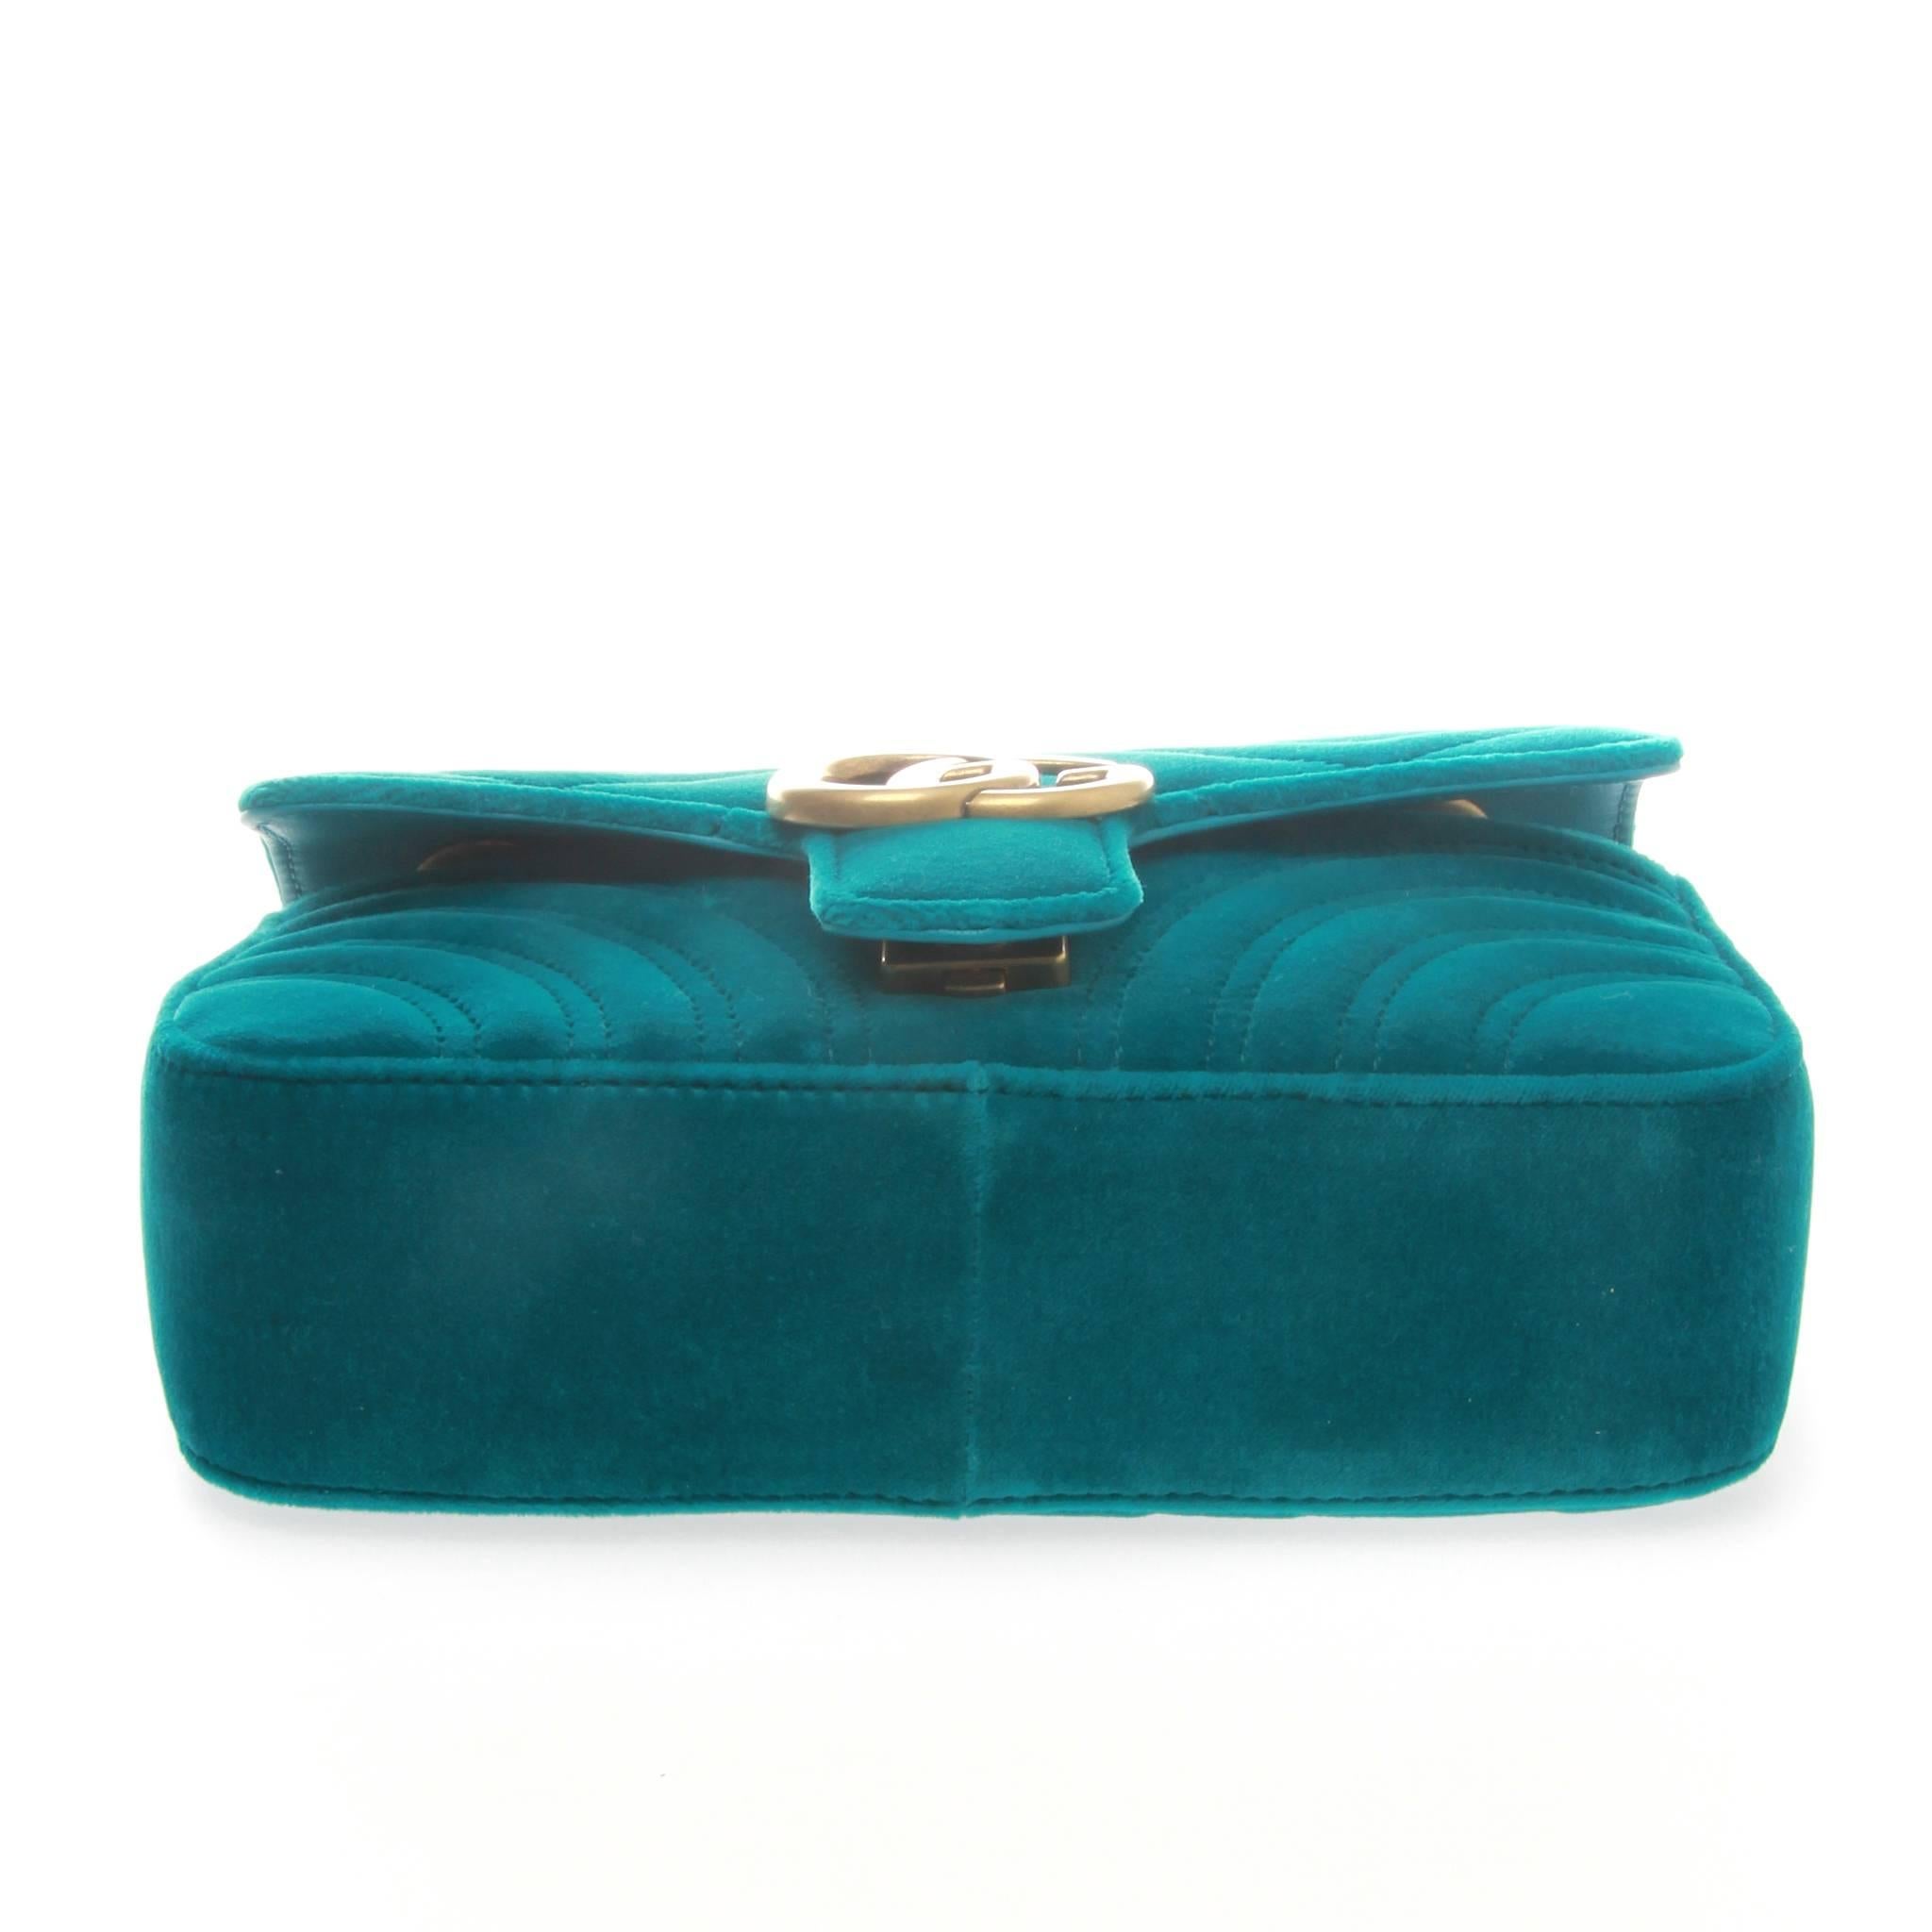 blue velvet gucci purse